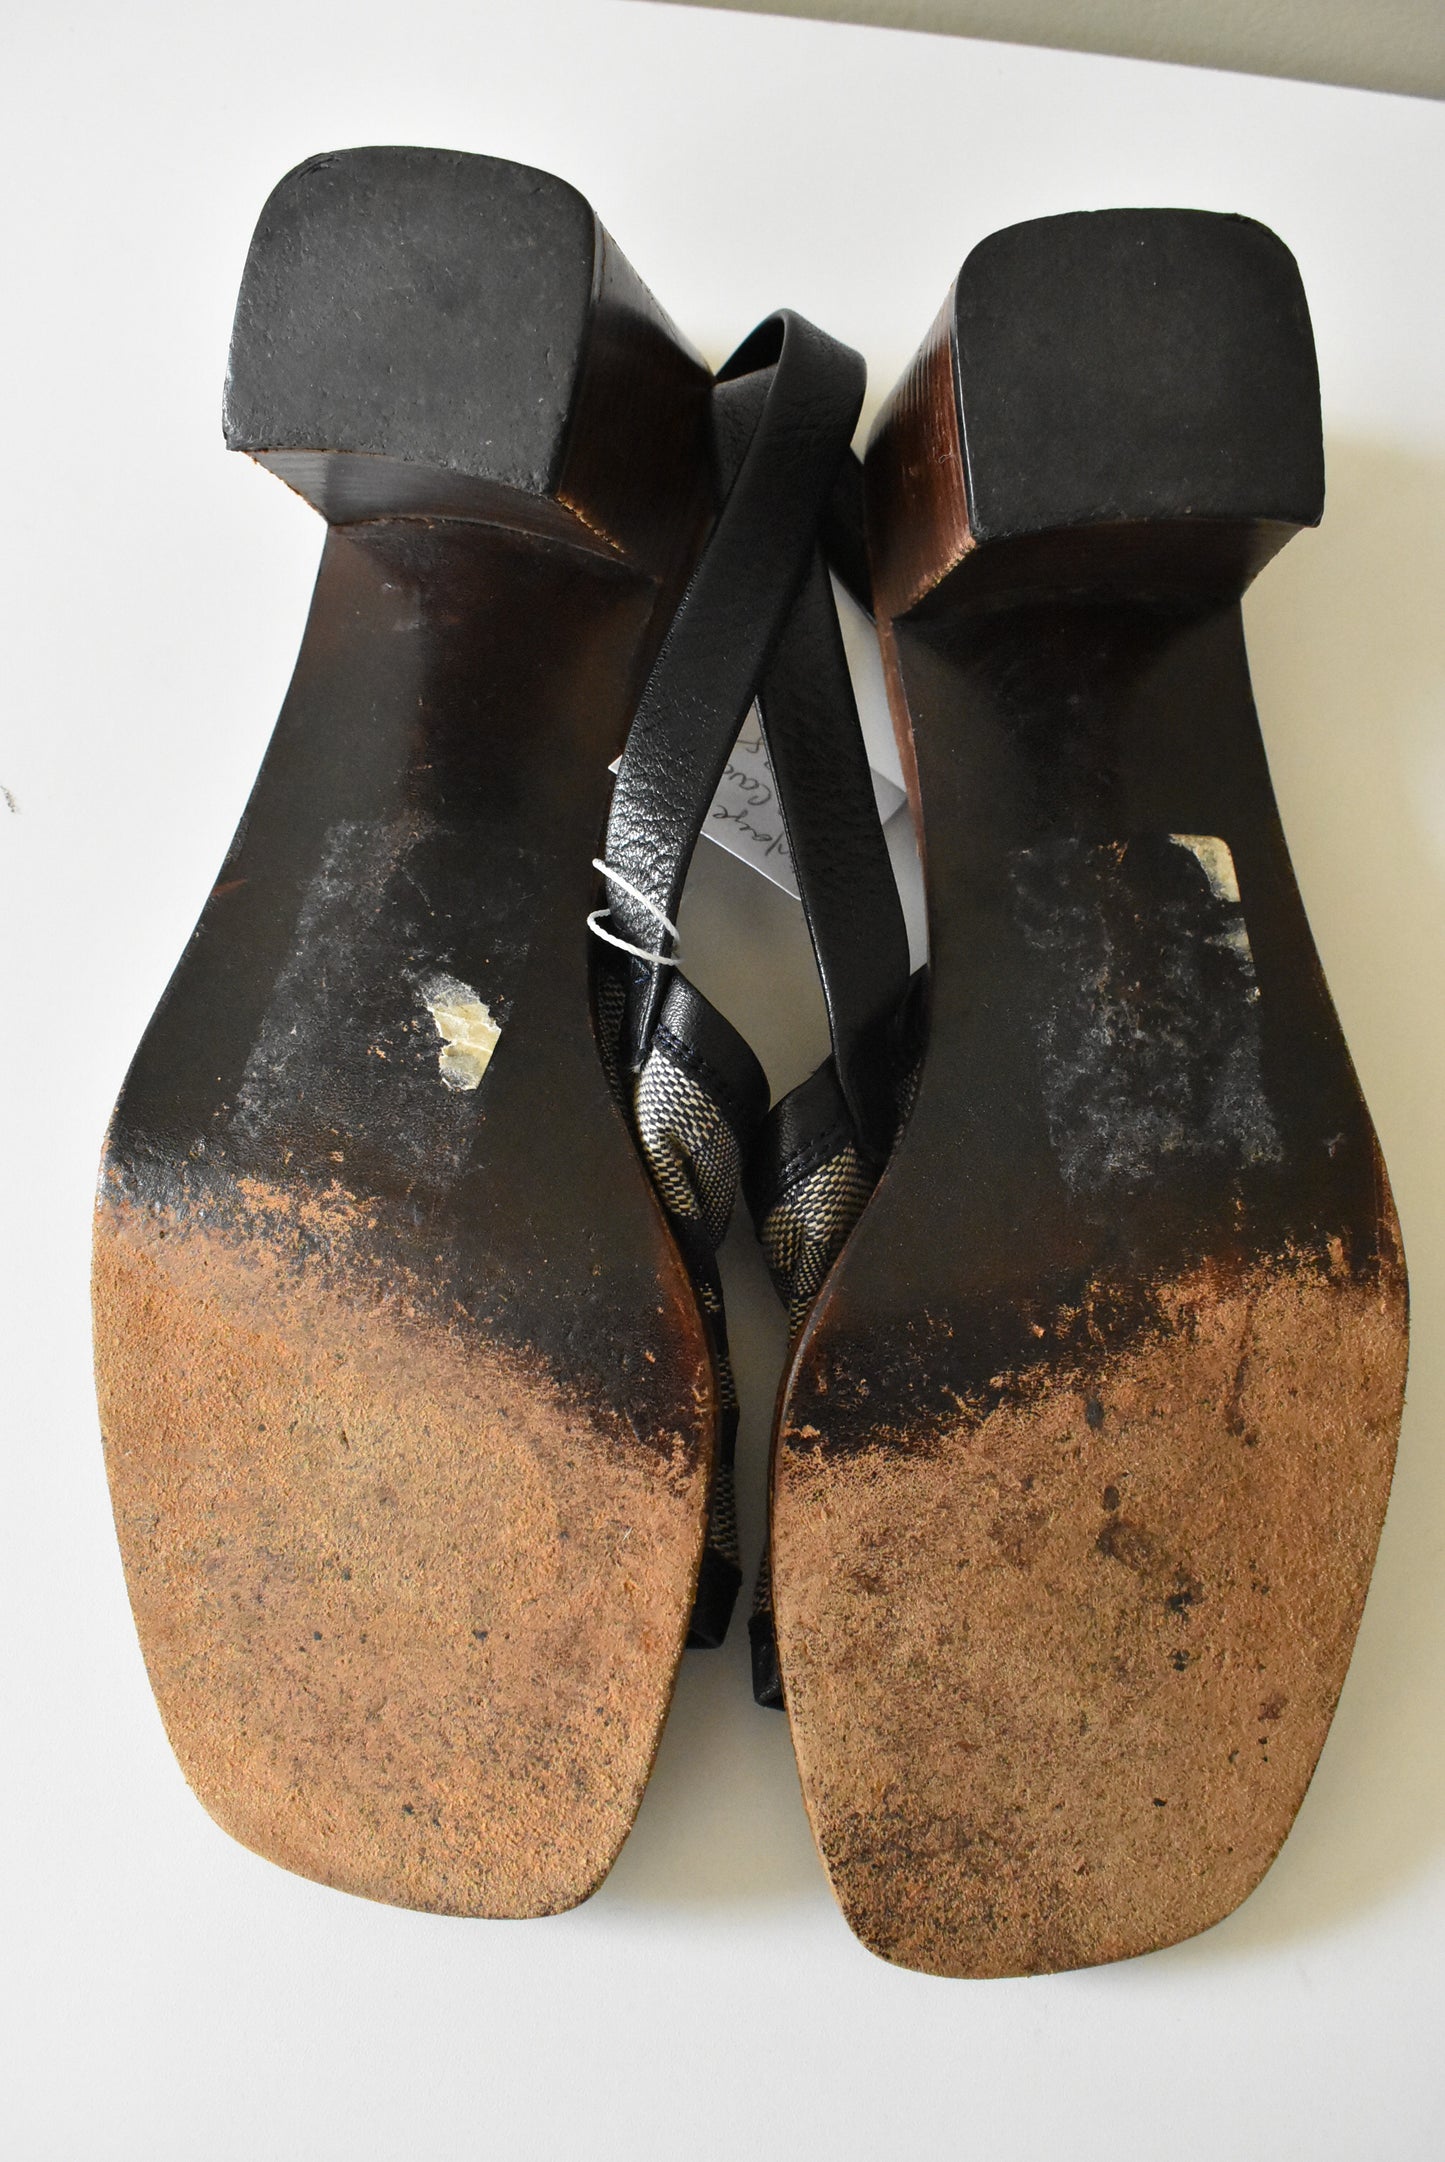 Vintage Pierre Cardin sandals, 8